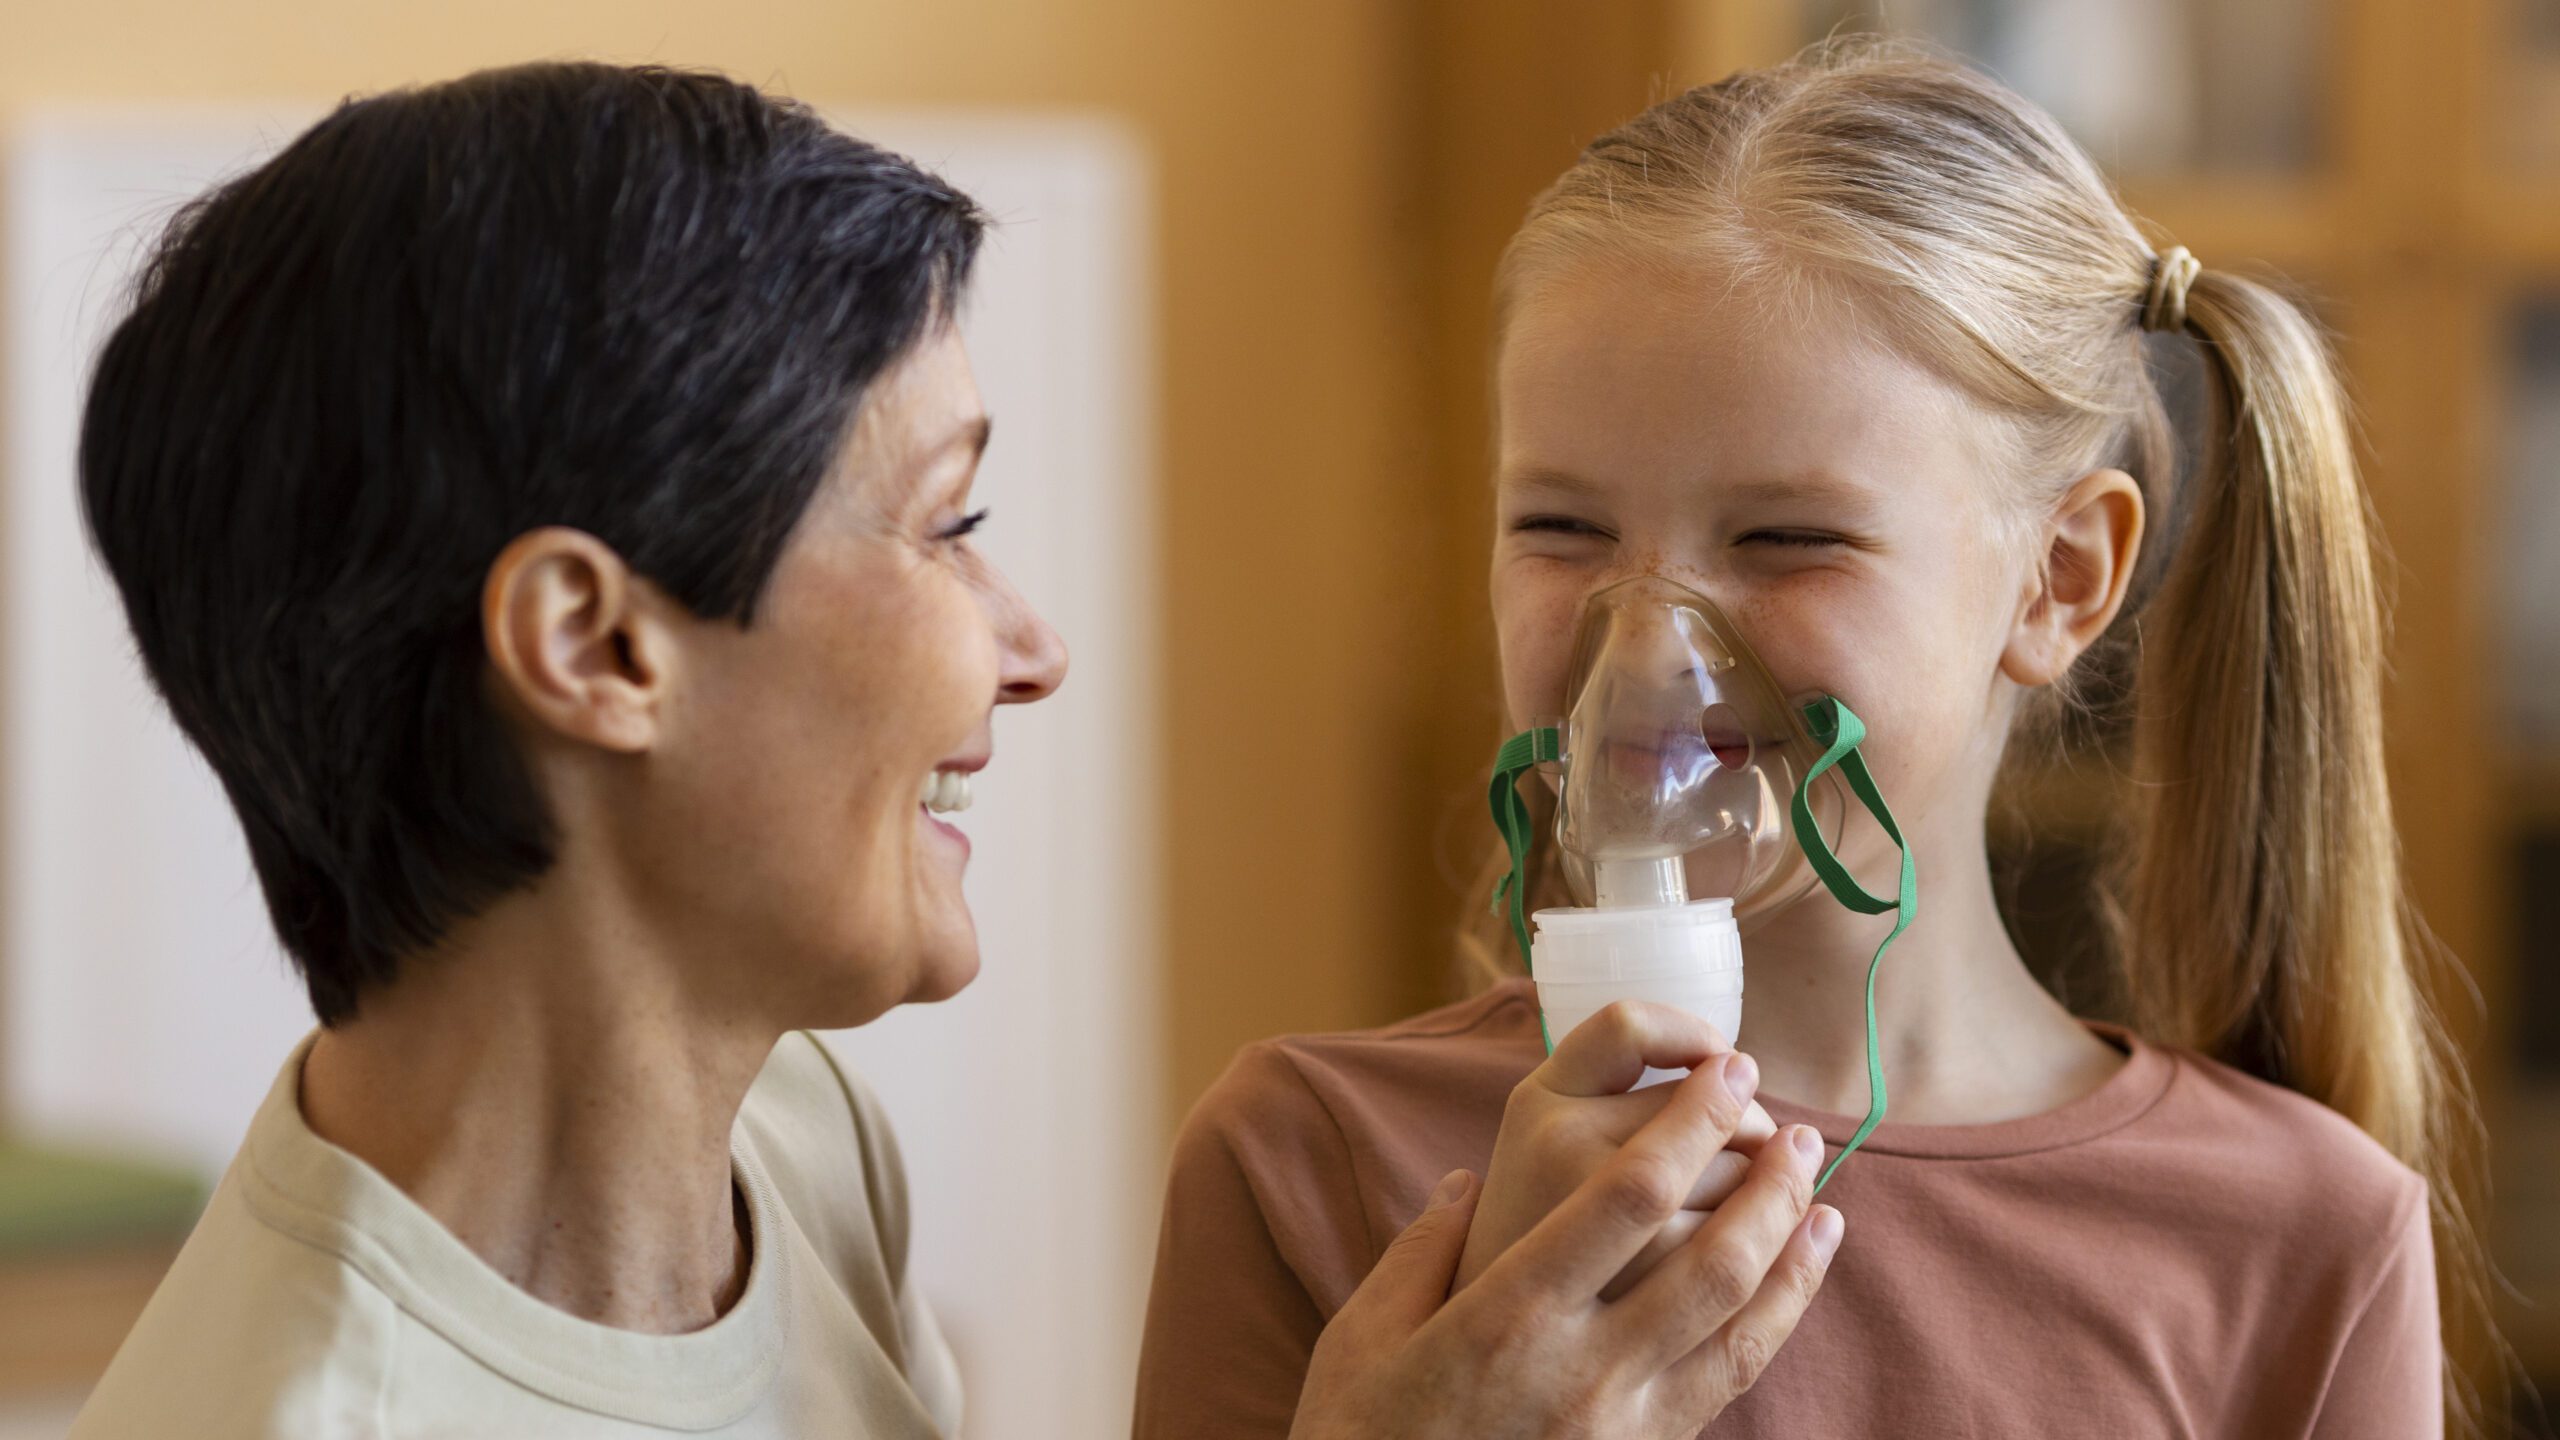 Effetti potenziali del rilascio diaframmatico manuale e del pompaggio linfatico toracico nell’asma infantile